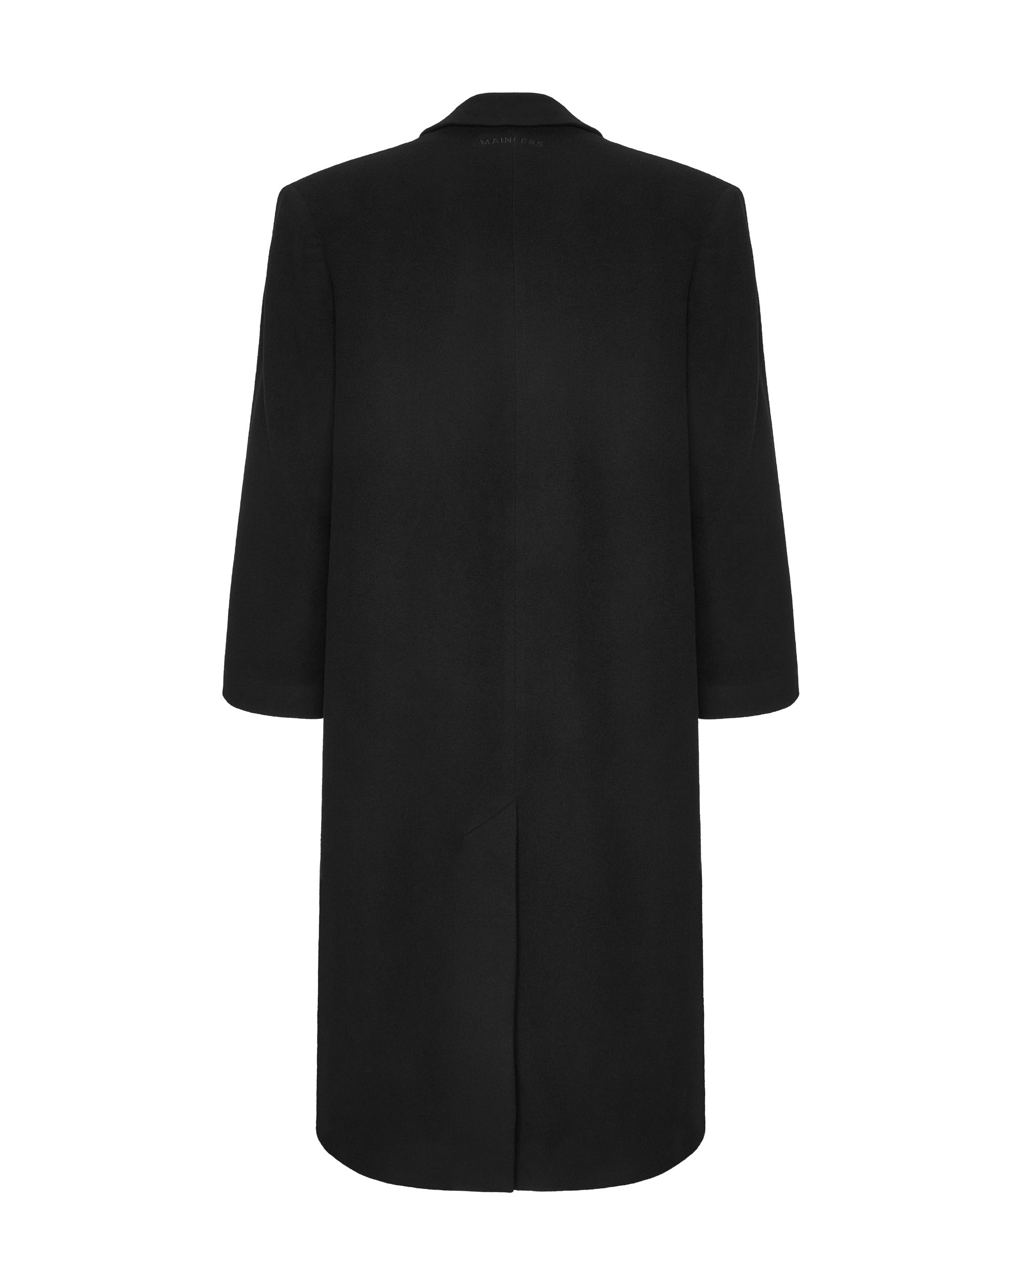 Oversized coat in black